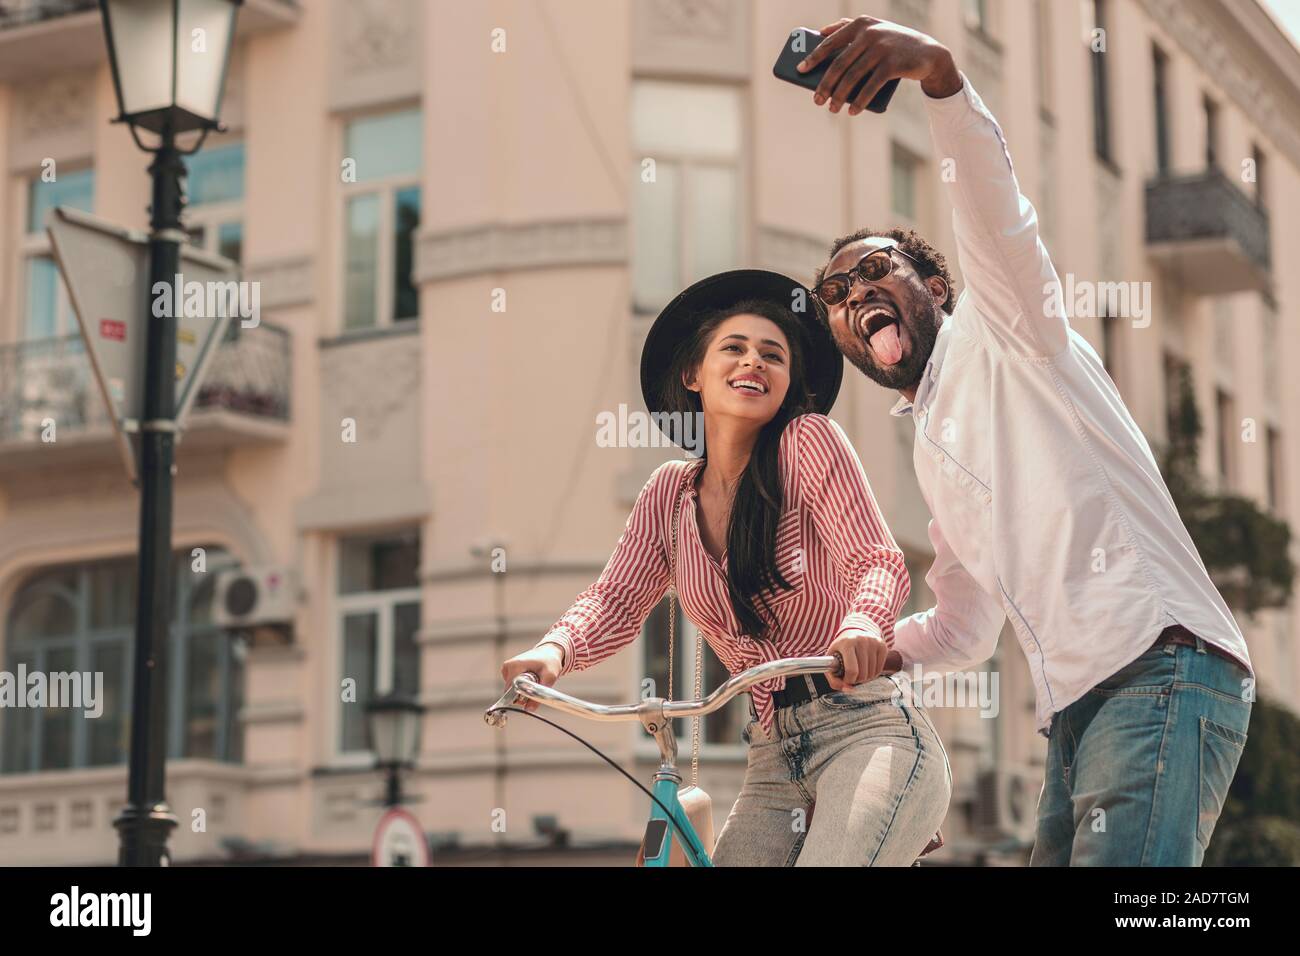 Mann unter selfie mit Frau auf dem Fahrrad Foto Stockfoto